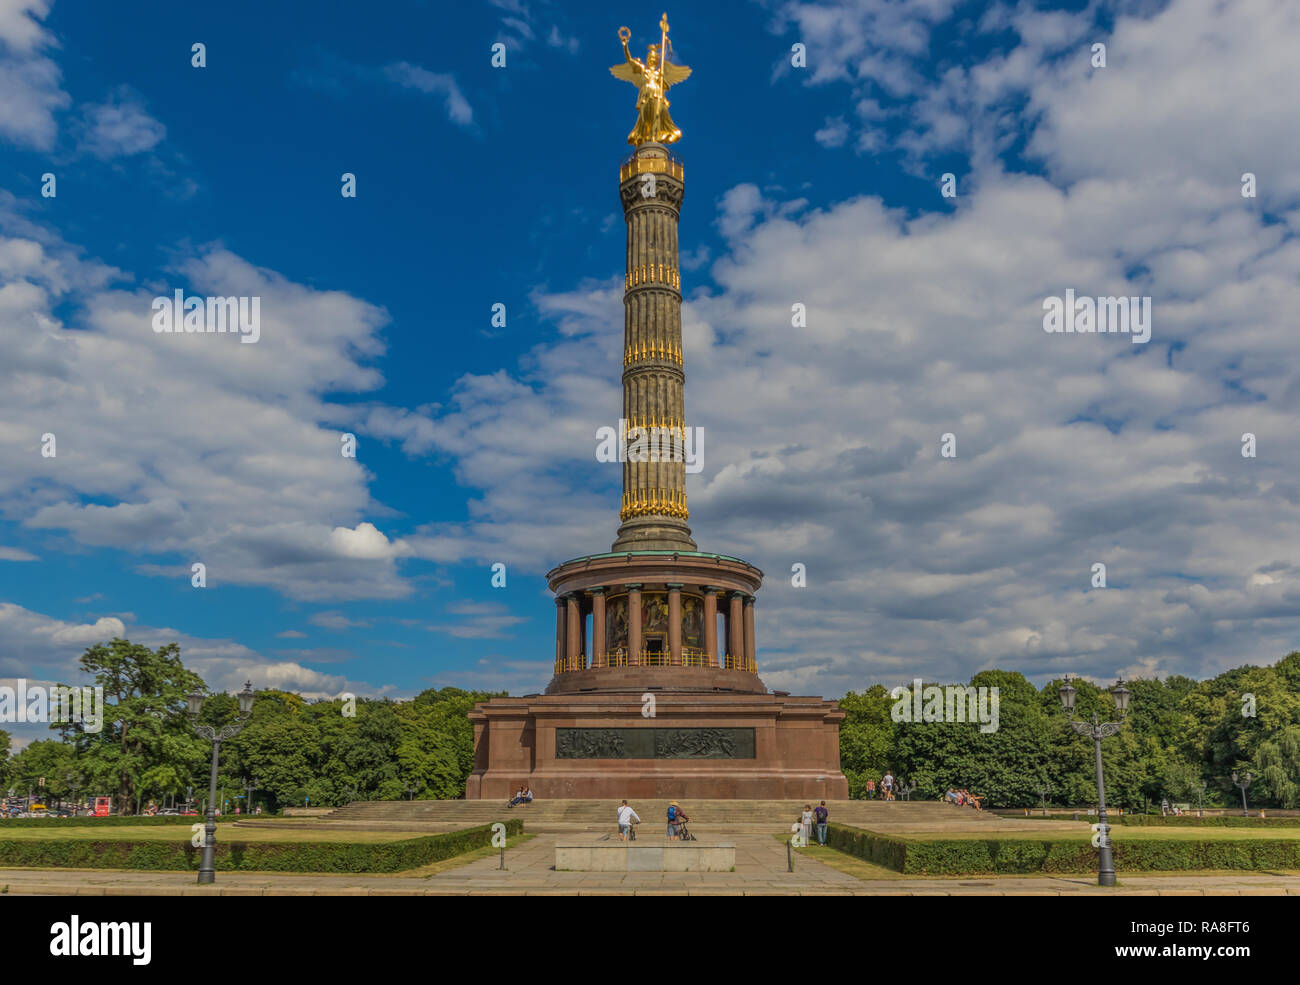 Berlin, Deutschland - der Tiergarten ist wahrscheinlich der bekannteste  Park in Berlin und die Berliner Siegessäule populär von U2 und Wim Wenders  Stockfotografie - Alamy